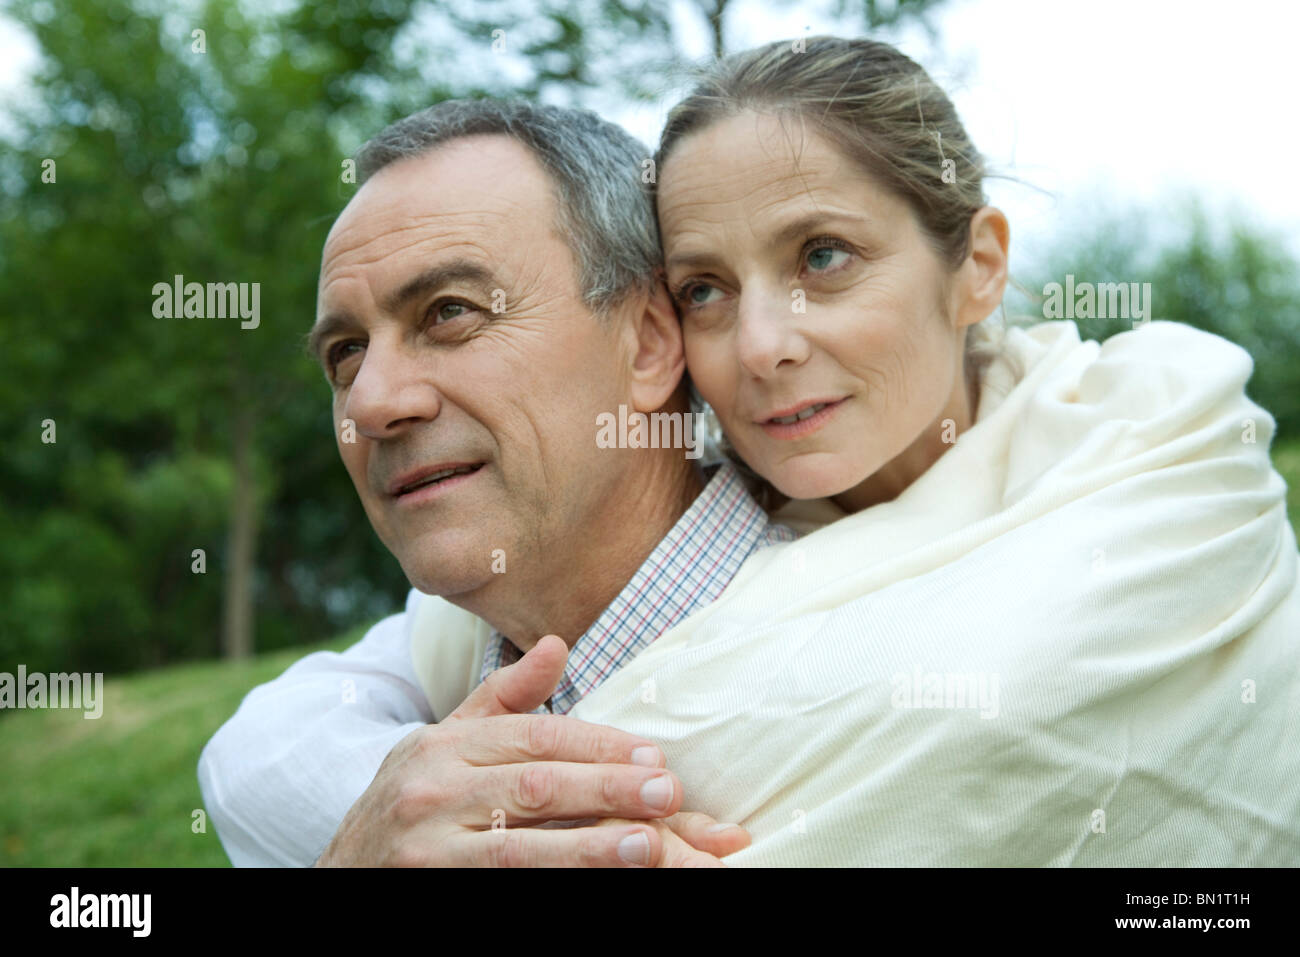 Young couple embracing, portrait Banque D'Images